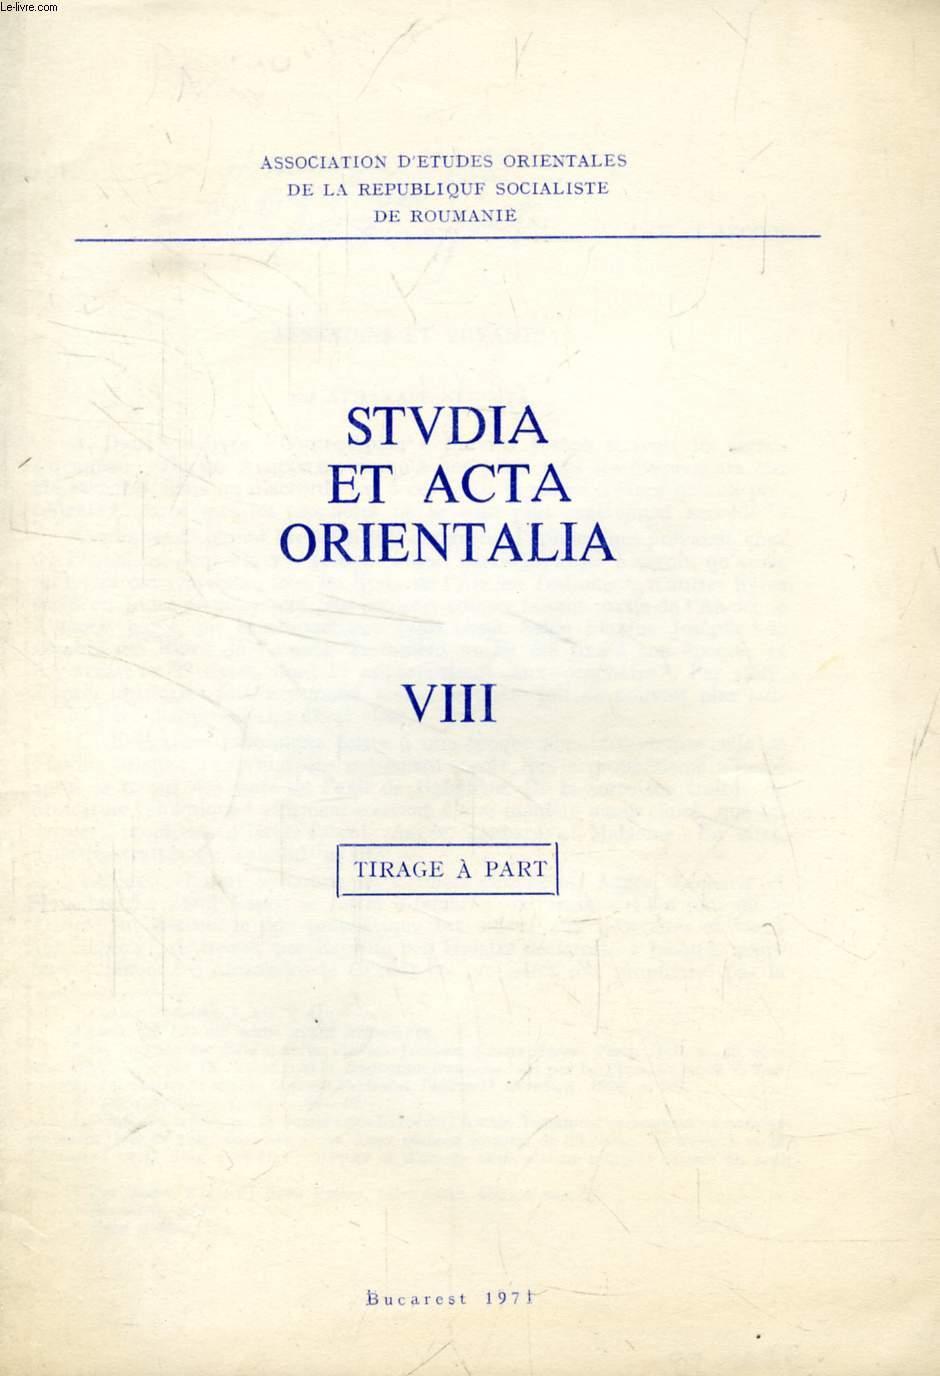 STUDIA ET ACTA ORIENTALIA, VIII, ESSENIENS ET VOYANTS (TIRE A PART)